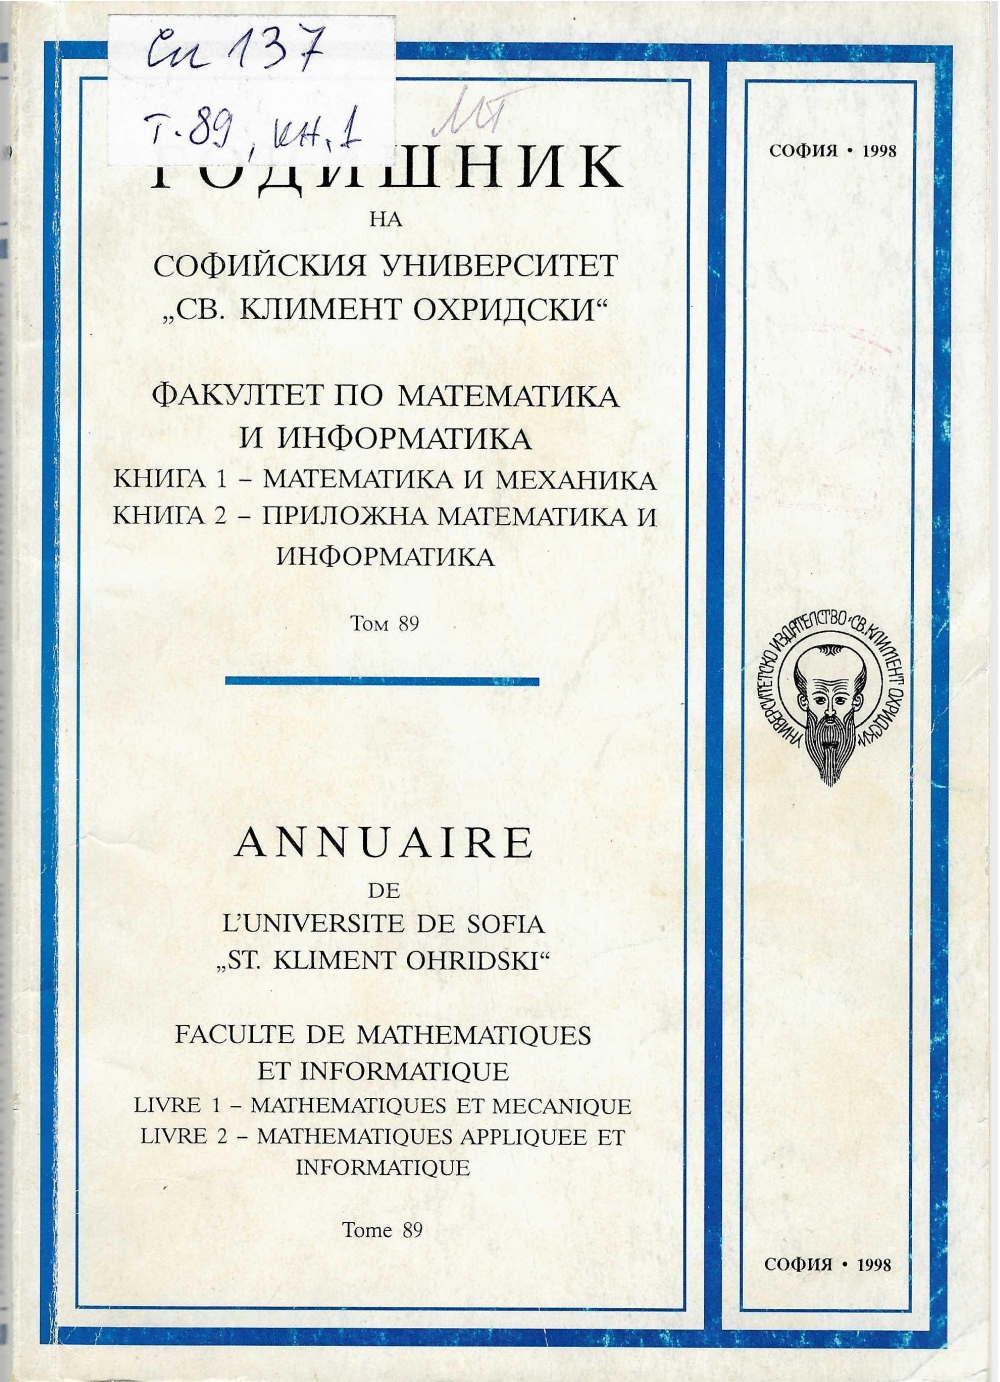 					View Vol. 89 (1997): Ann. Sofia Univ. Fac. Math and Inf.
				